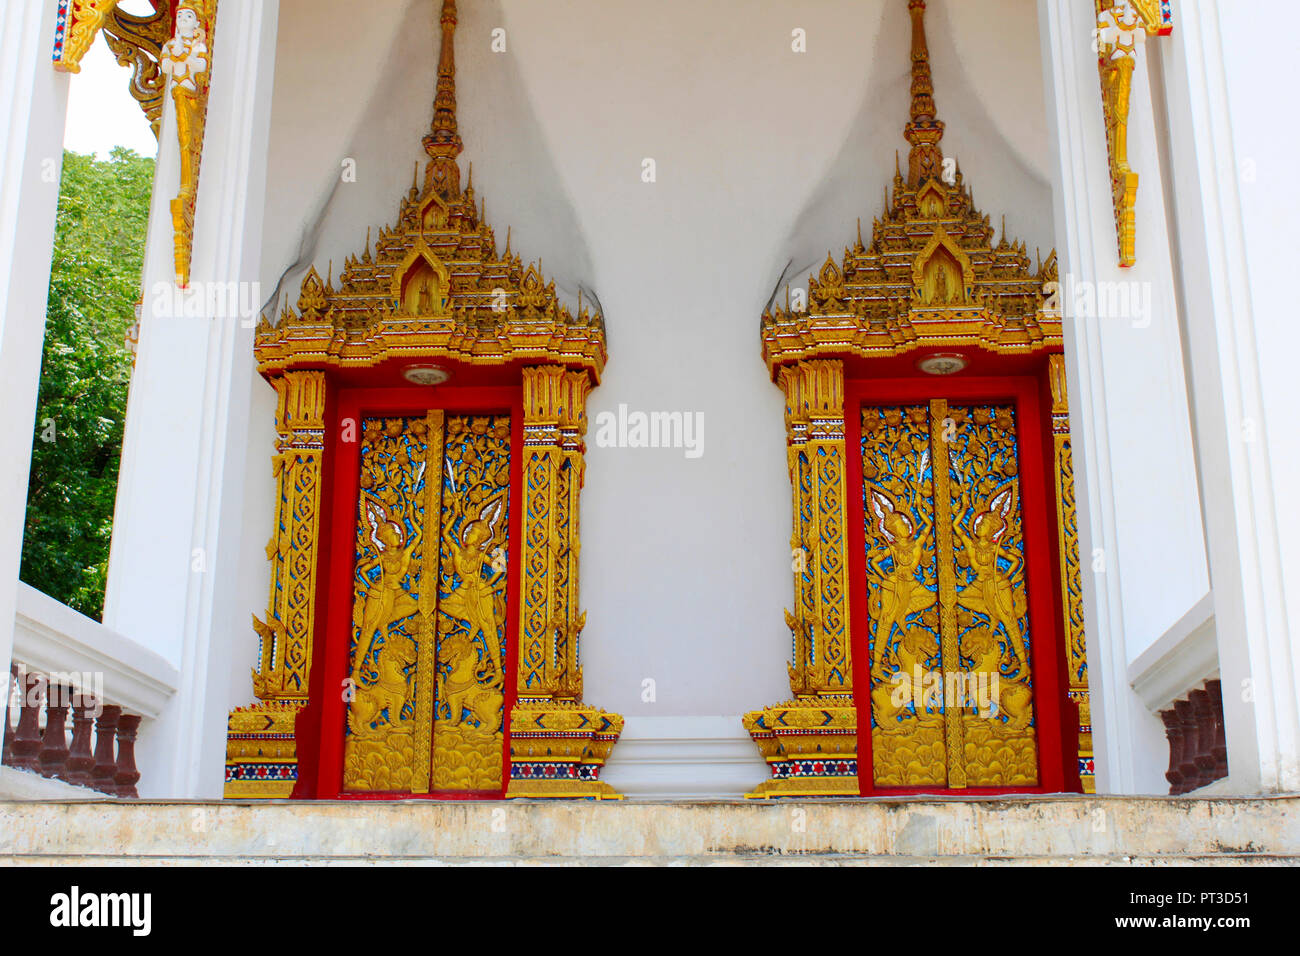 Fenster und Türen des Tempels durch Filigrane Holzschnitzereien in goldener Farbe Darstellung des Buddha Leben durch die Jataka-geschichten vertraut gemacht geschmückt, auf Ban Bung Stockfoto